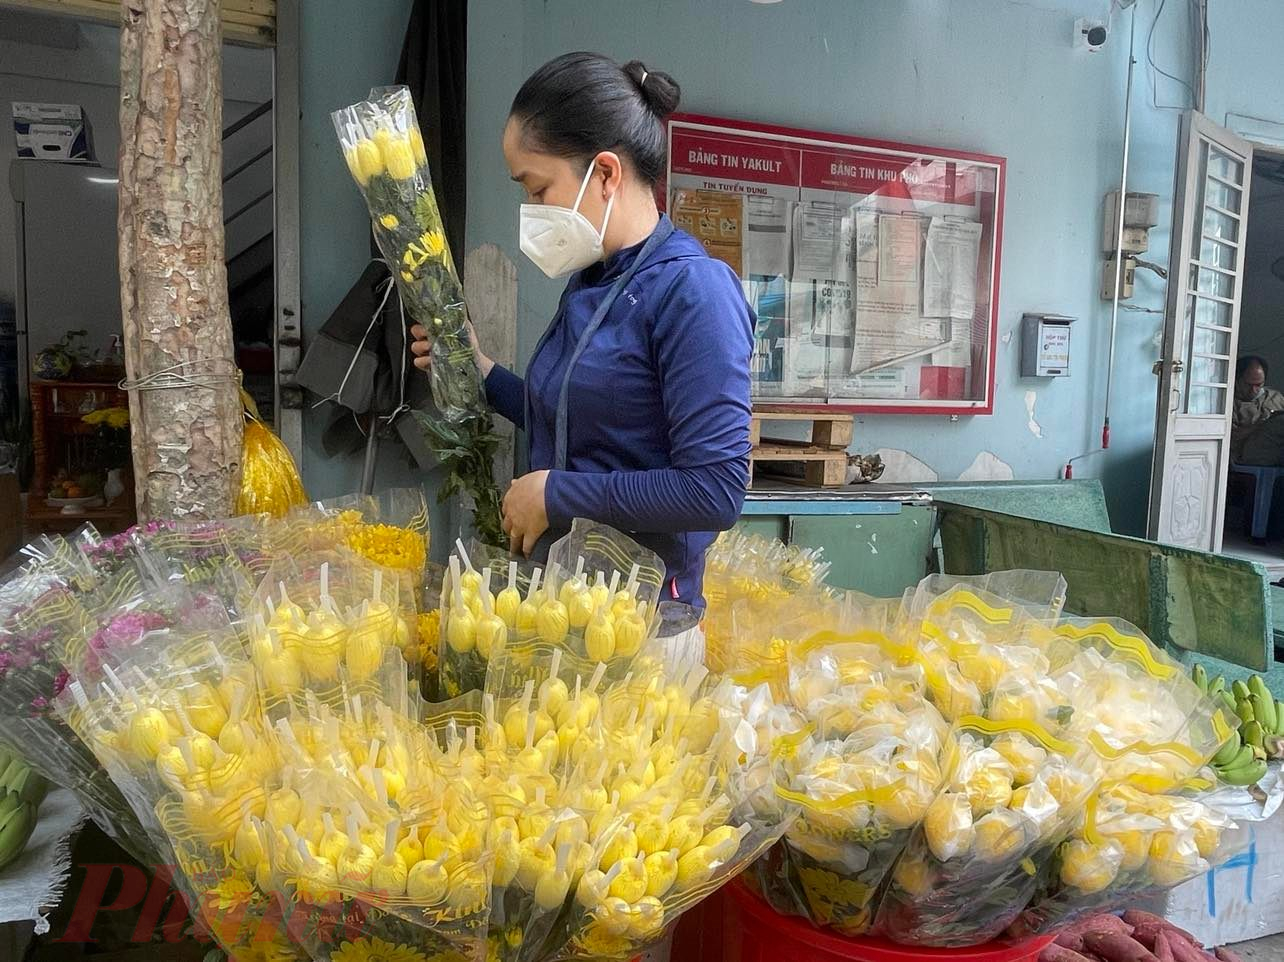 Các mặt hàng hoa chưng cúng như cúc vàng, cúc tím... cũng tăng 5.000 – 10.000 đồng/bó 10 bông, từ 25.000 – 35.000 đồng/bó (tùy hoa lớn, nhỏ) lên 35.000 – 45.000 đồng/bó. Chị Dương, bán hoa chợ Lê Thị Hồng, quận Gò Vấp giải thích “hoa dịp này hơi khan hàng do trùng dịp Tết cổ truyền Campuchia, hoa được chuyển sang nước này nhiều”. 